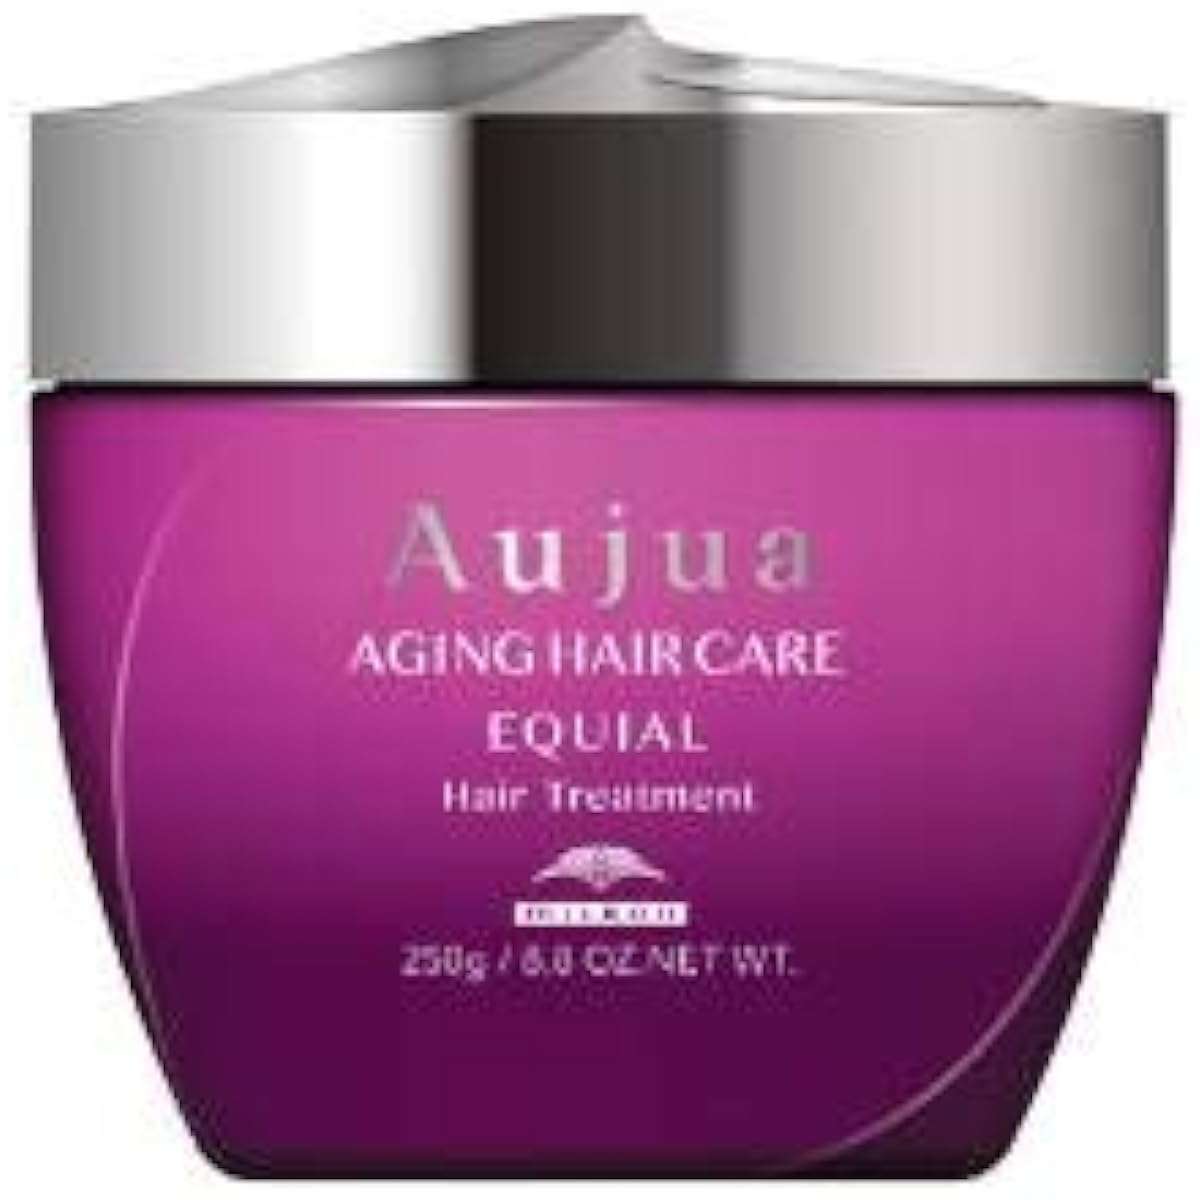 Aujua EQ Equial Hair Treatment (250g)